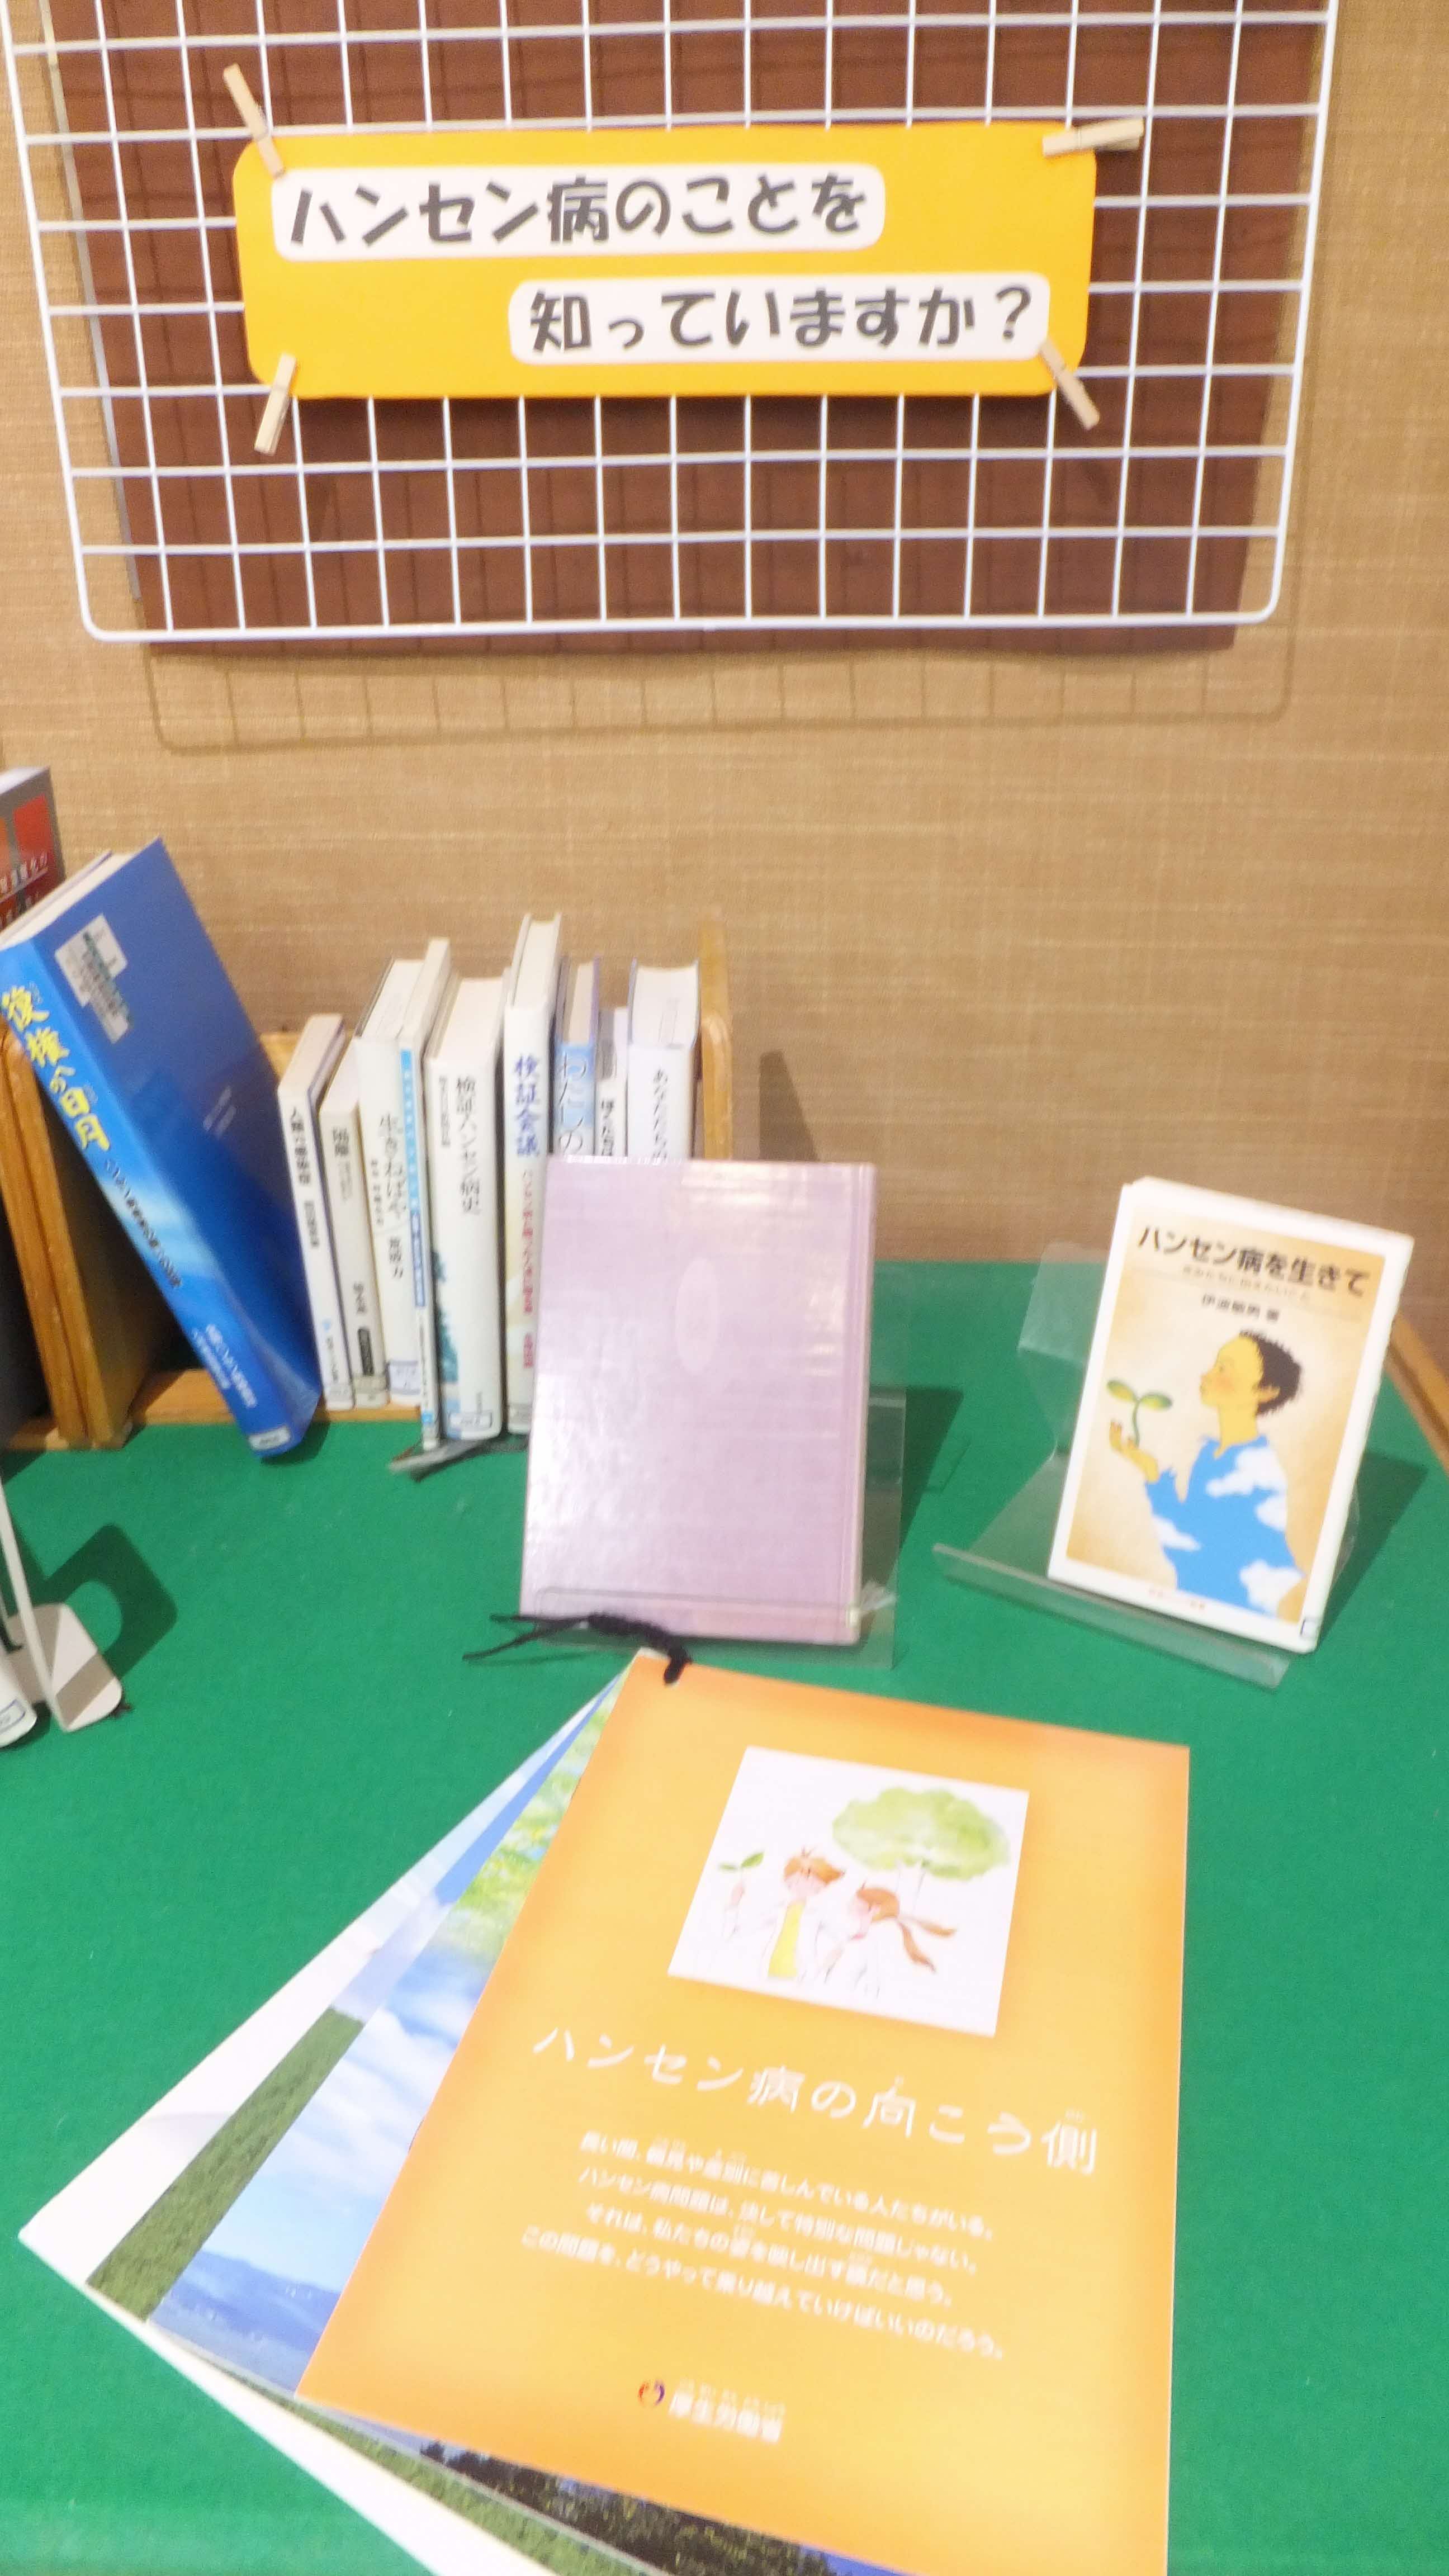 ハンセン病に関連する図書の展示（大井川図書館）